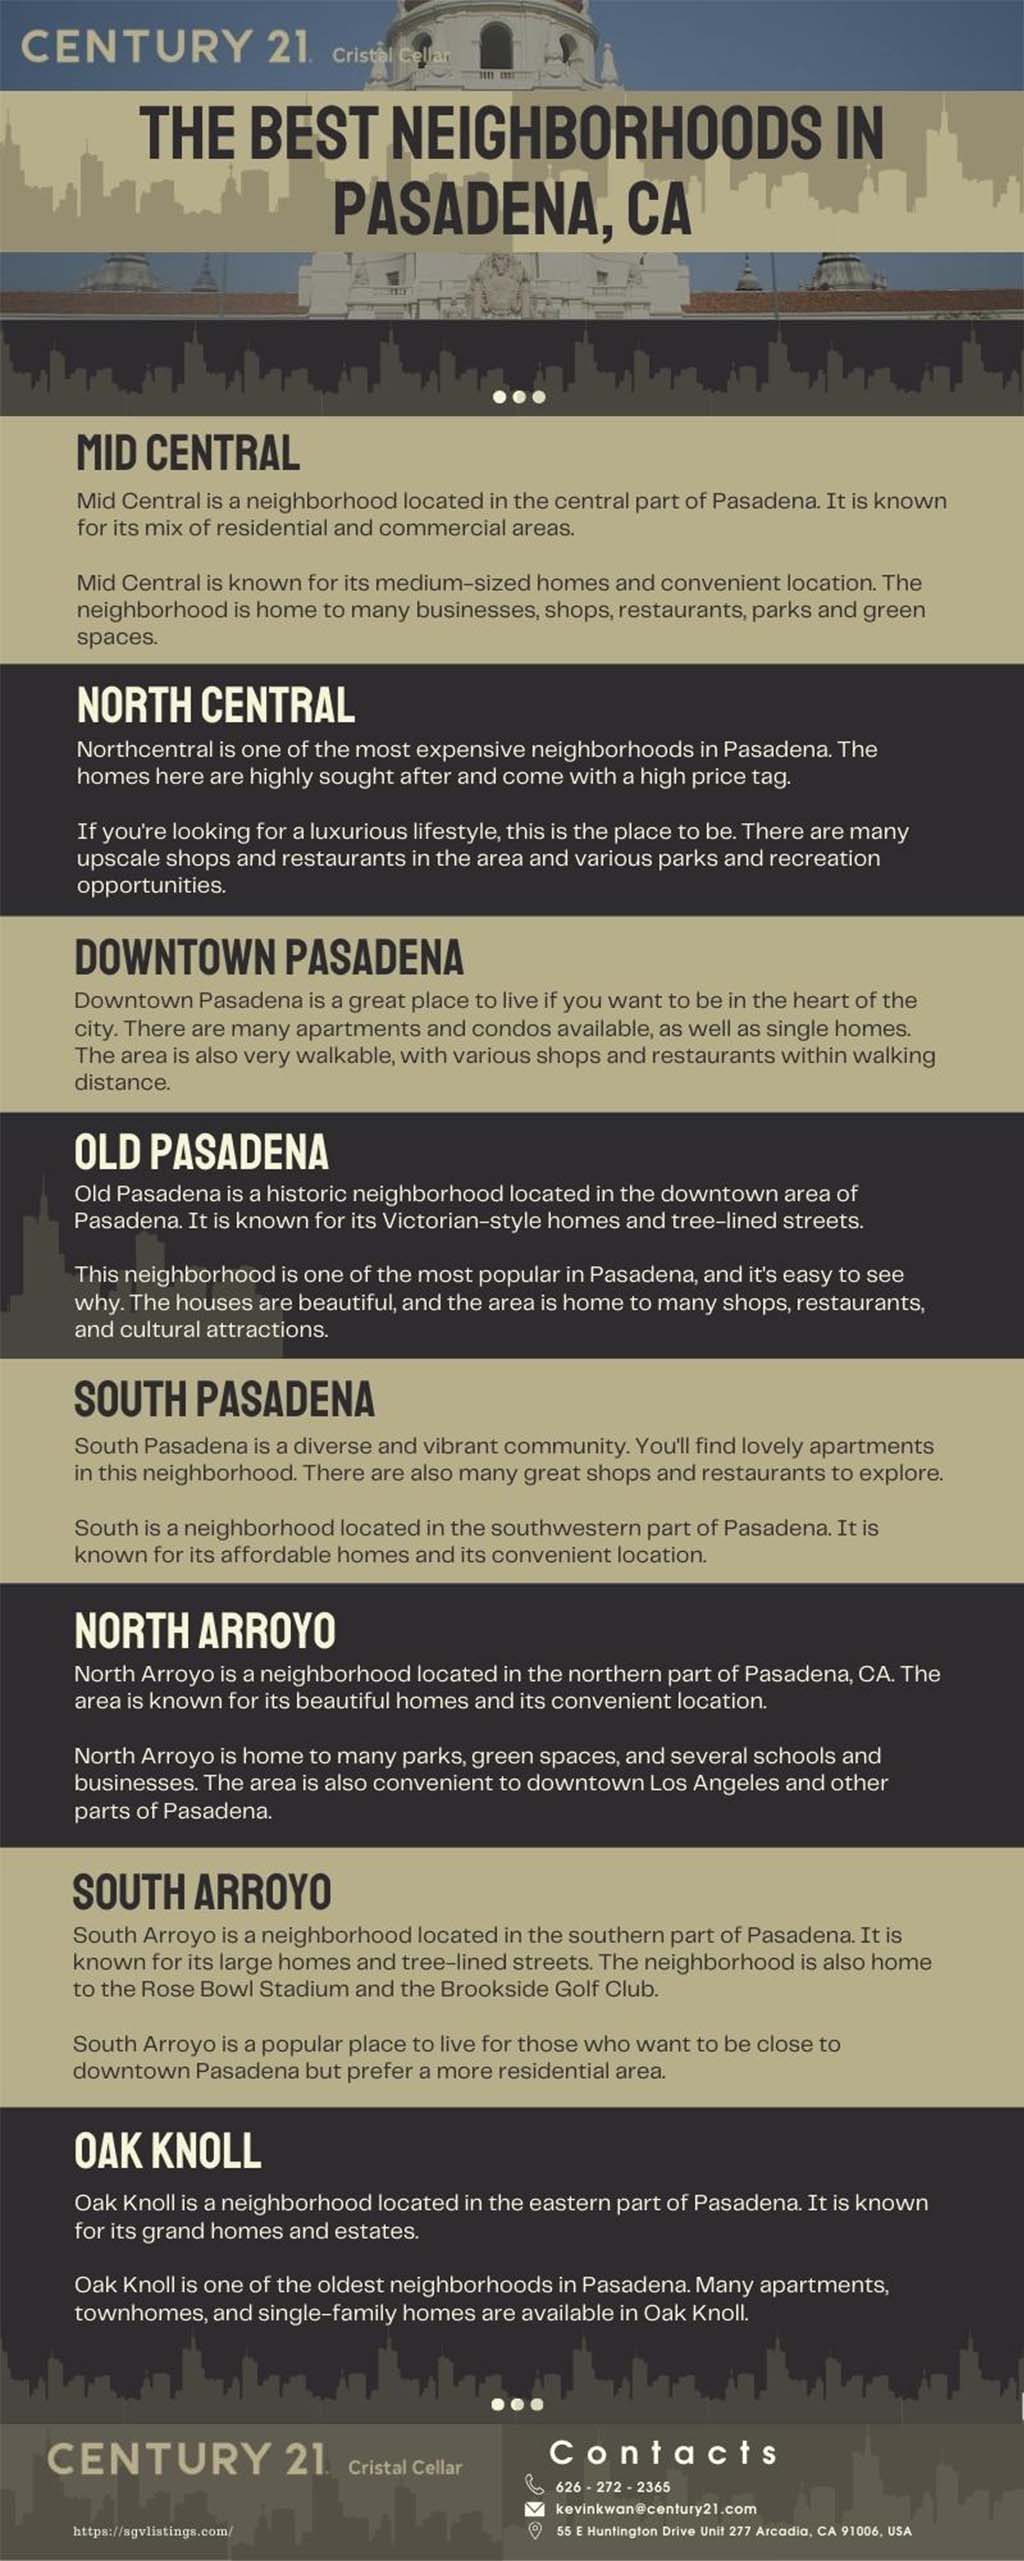 Neighborhoods in Pasadena infographics